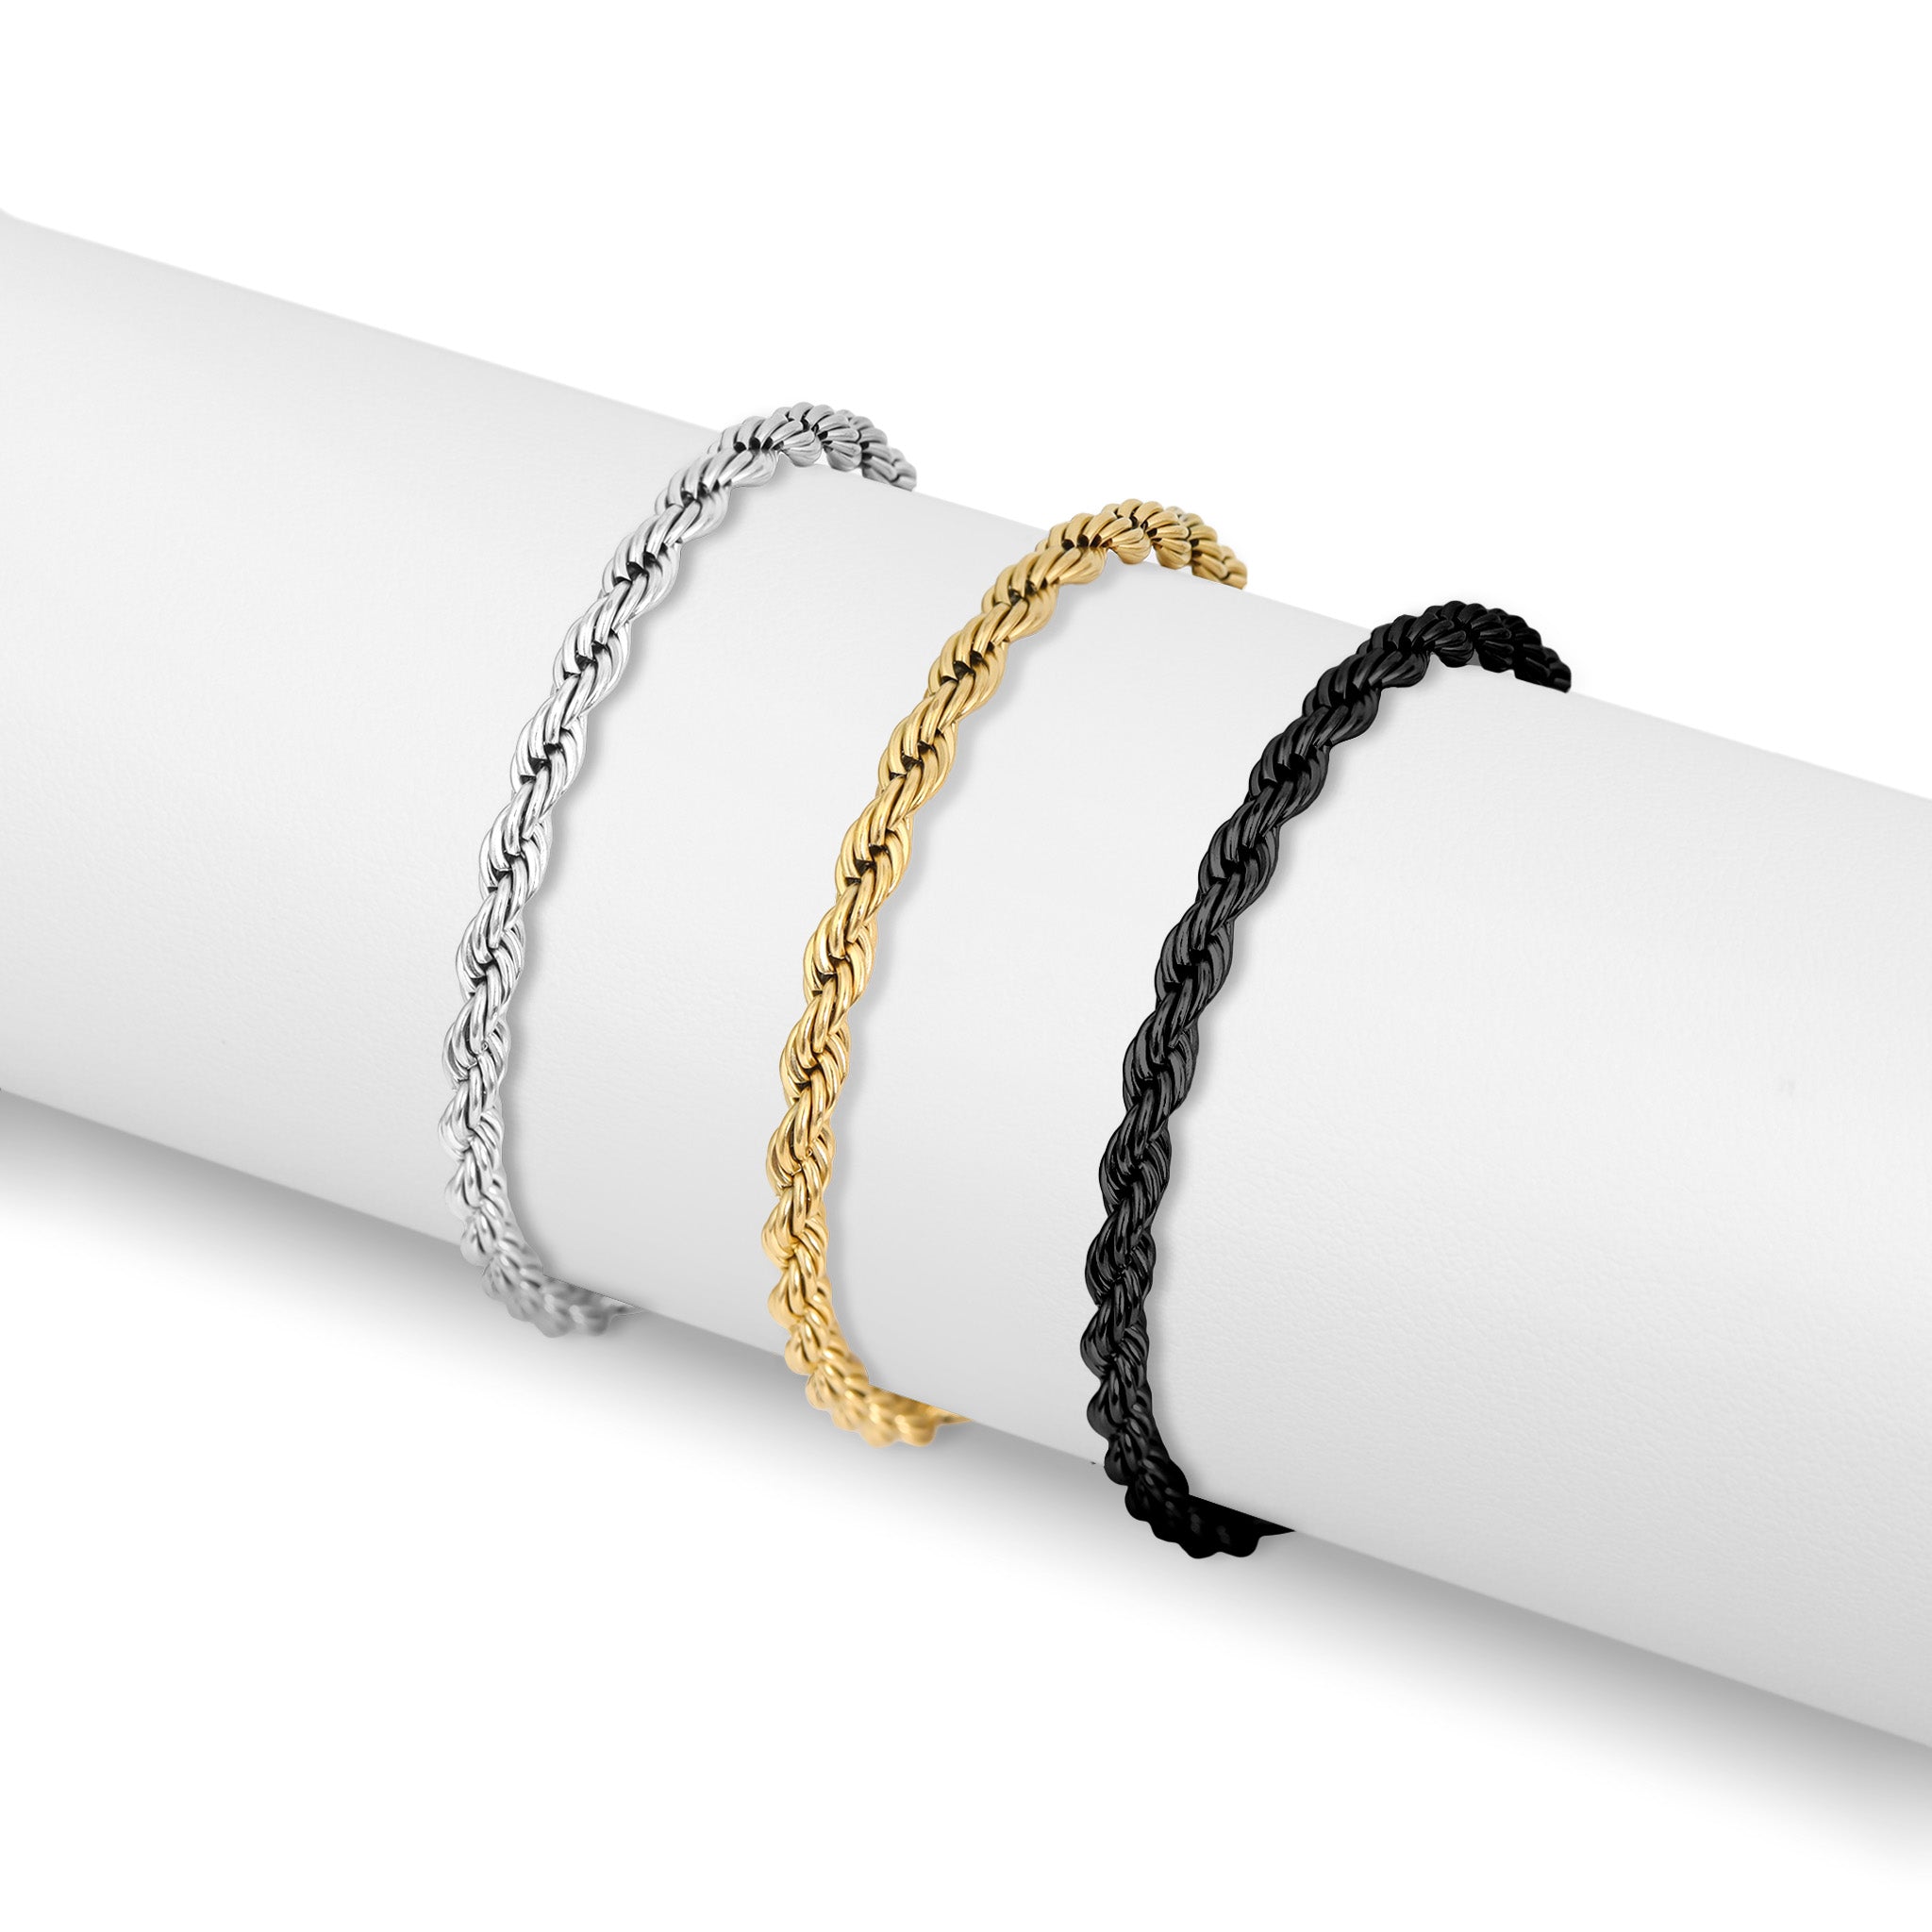 Stainless steel bracelet for men, wheat rope chain - JoyElly